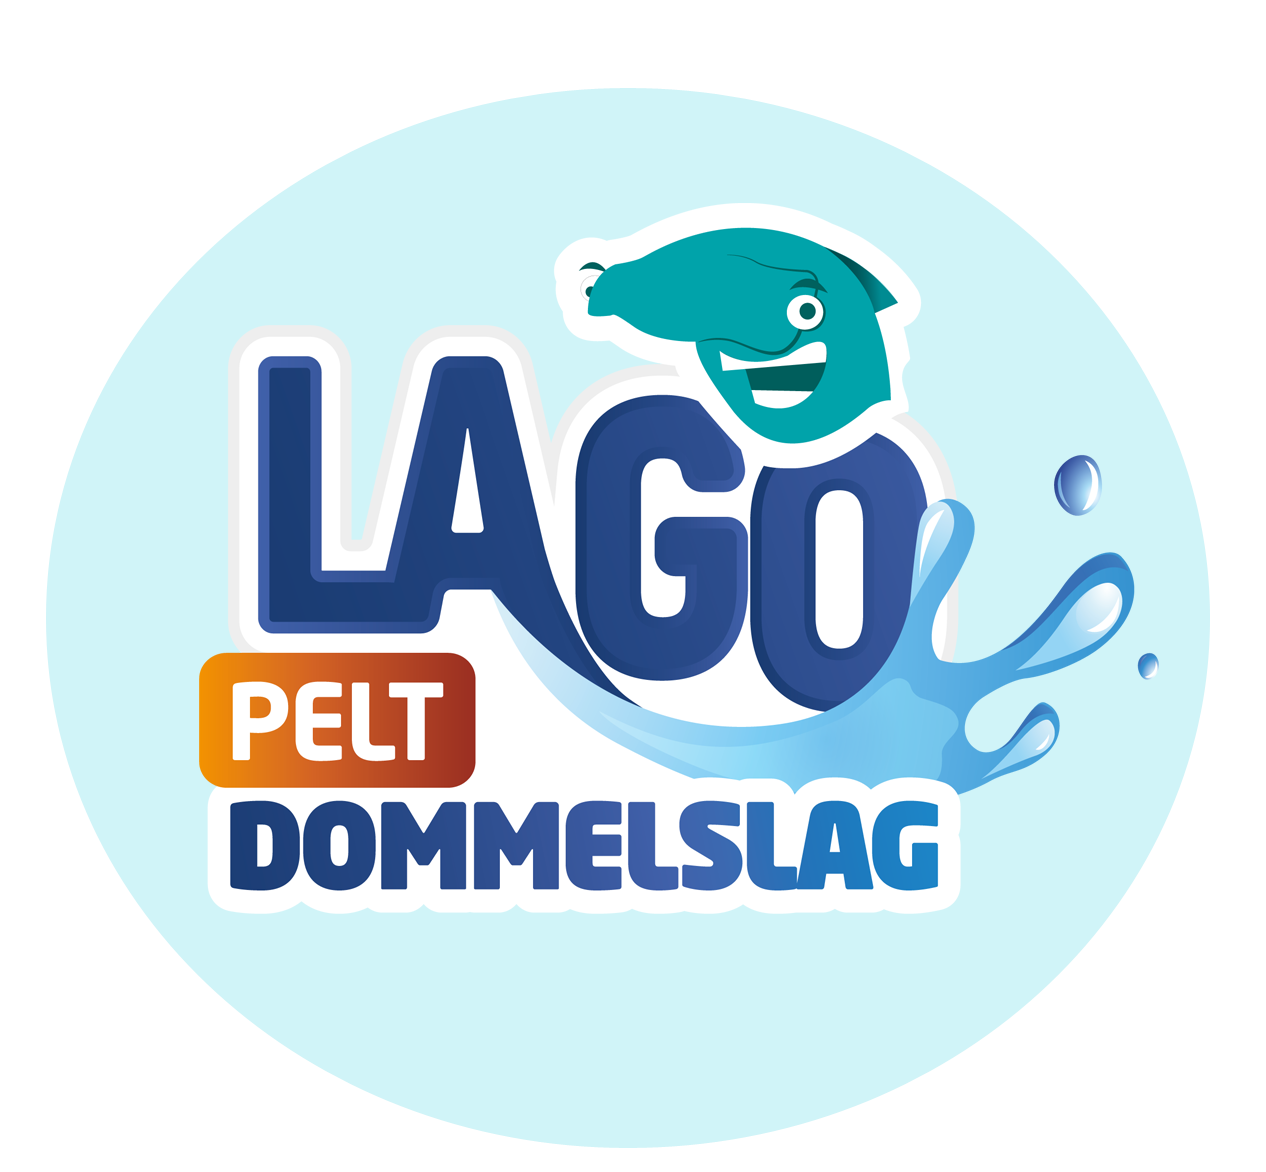 Logo Lago